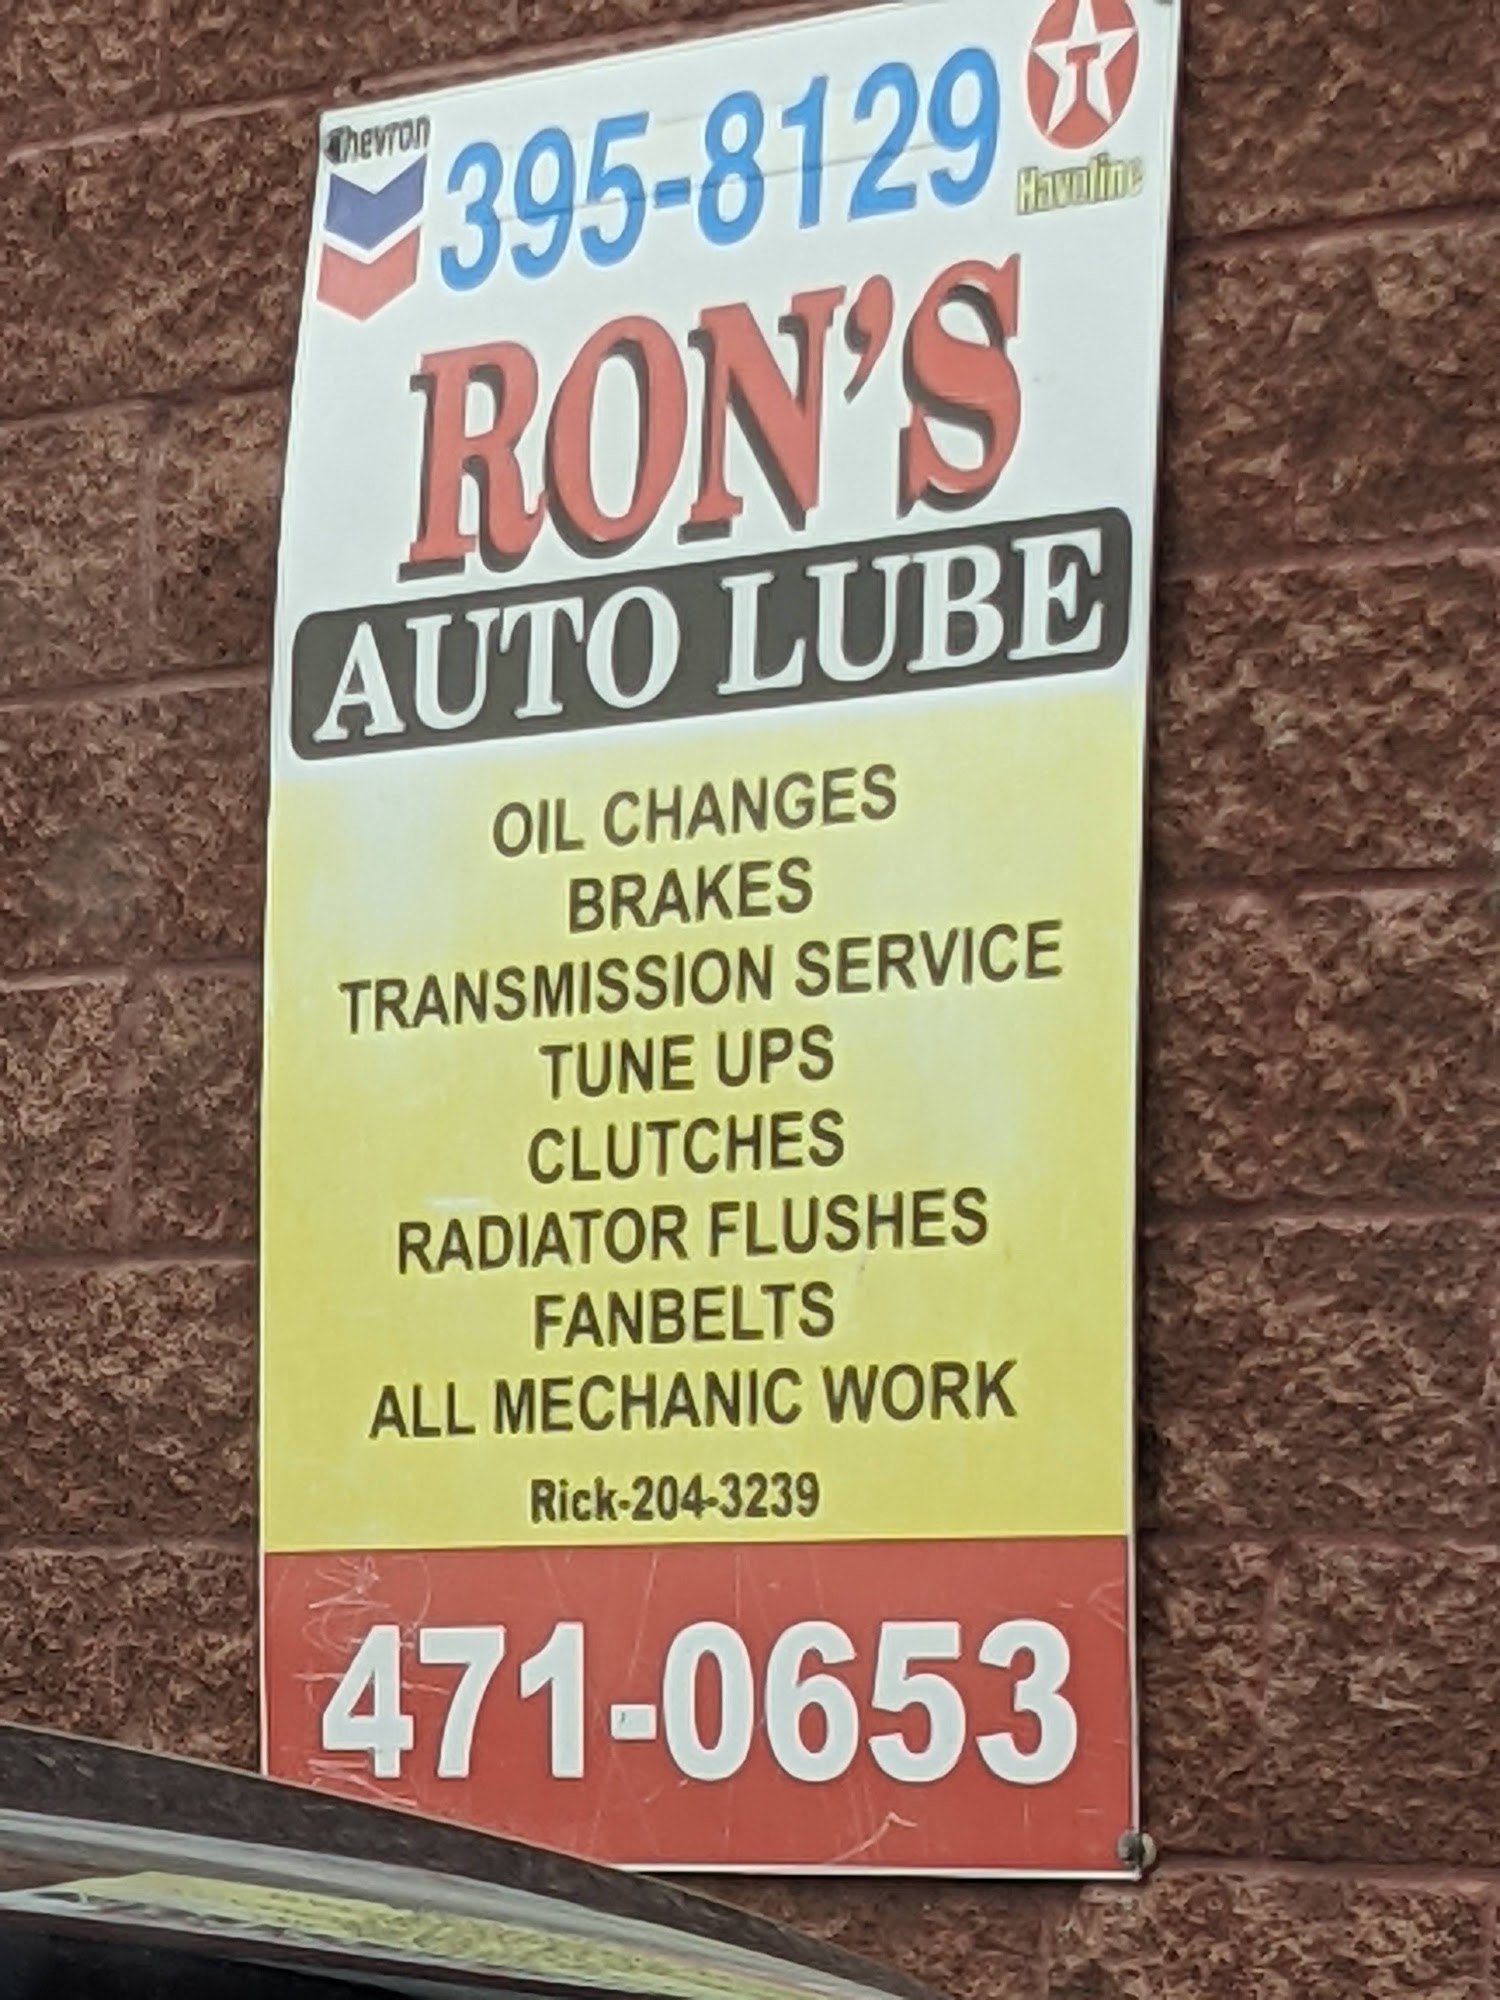 Ron's Auto Lube